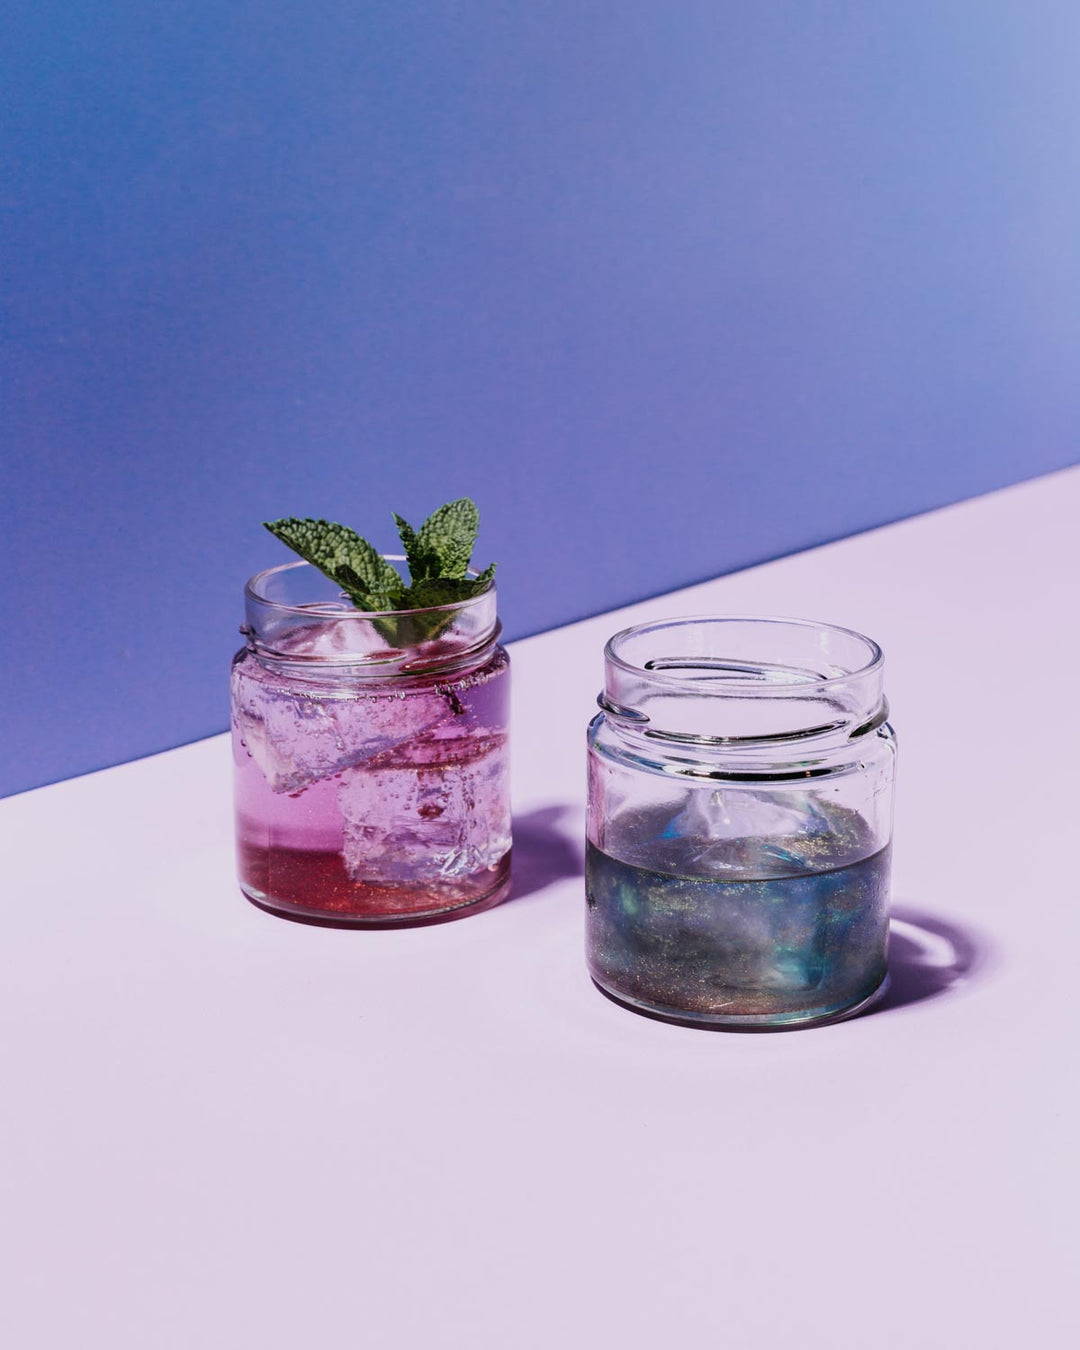 Unser glitzernder Simsala Gin einmal pur und in magisch blauer Farbe und einmal in einem anderen Glas als Gin Tonic, wodurch er seine Farbe zu einem zauberhaften lila gewechselt hat. 